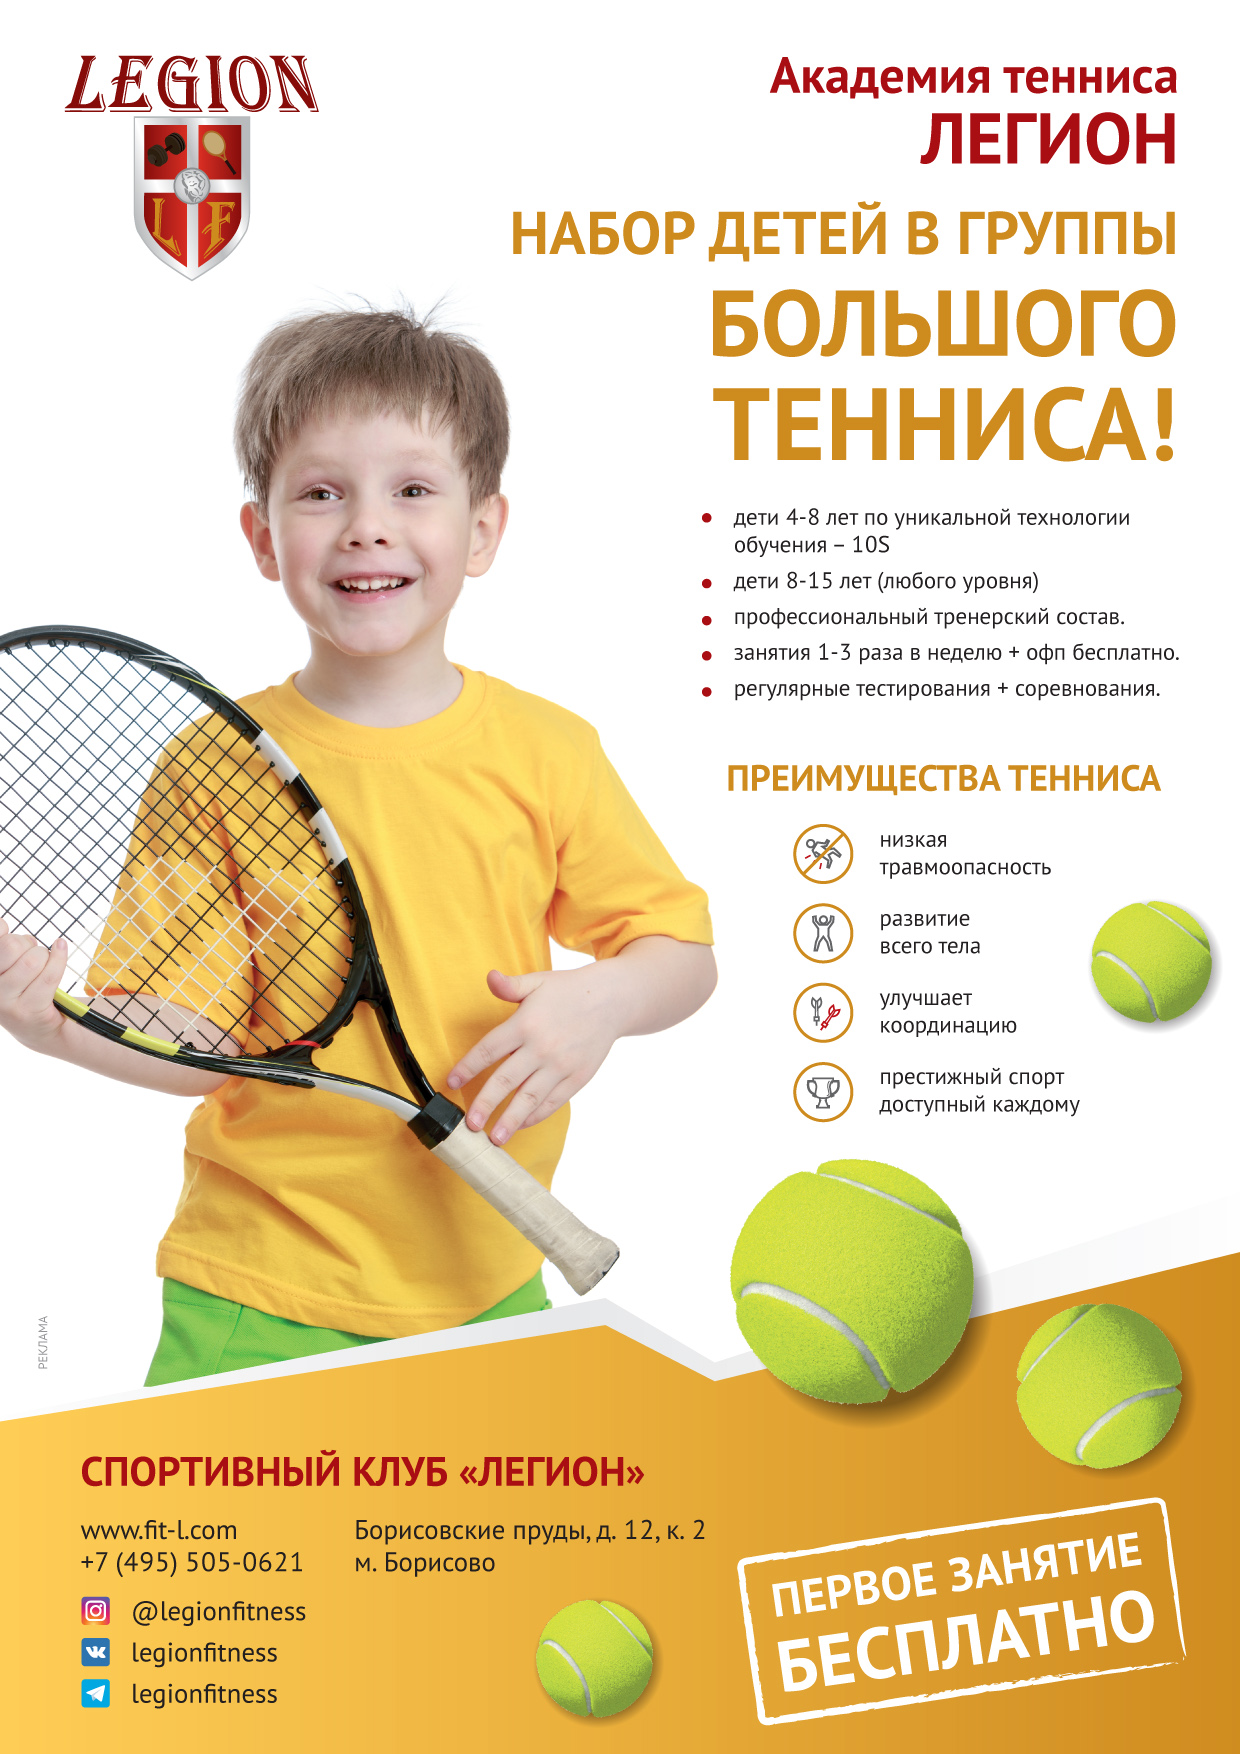 детский теннис академия тенниса обучение теннису